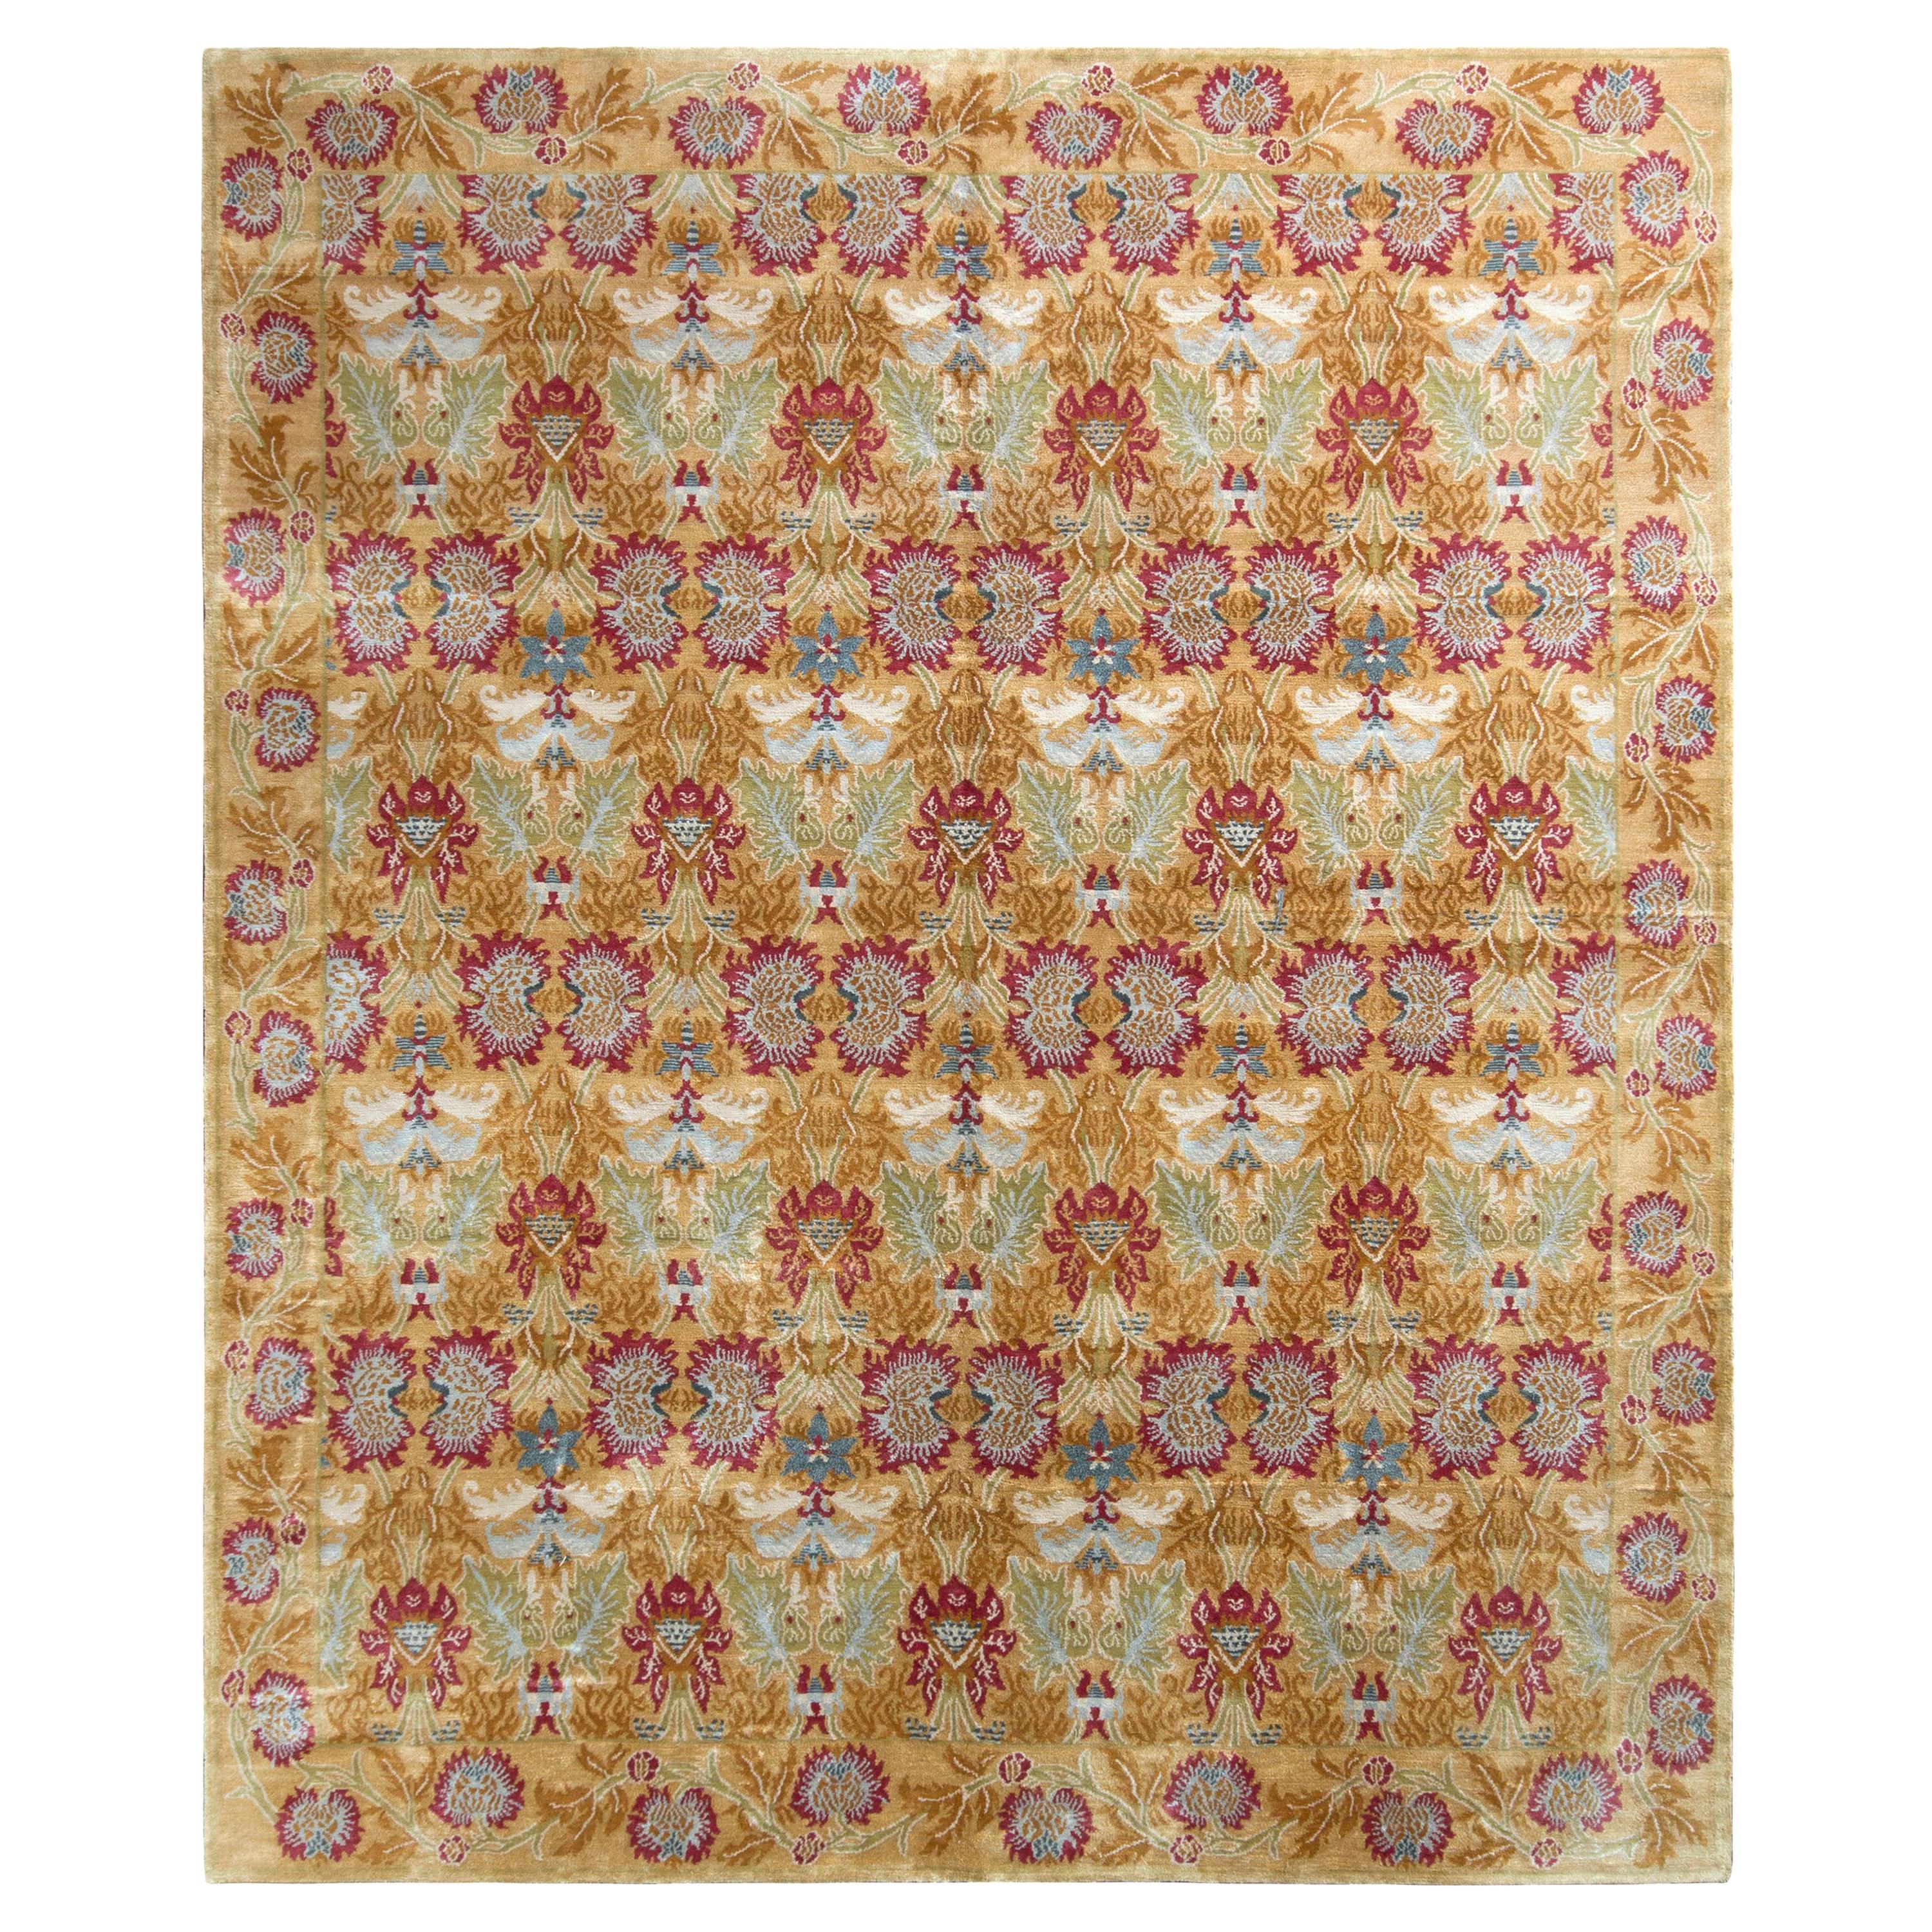 Teppich im europäischen Stil von Teppich & Kilims in Gold und Rot mit Blumenmuster